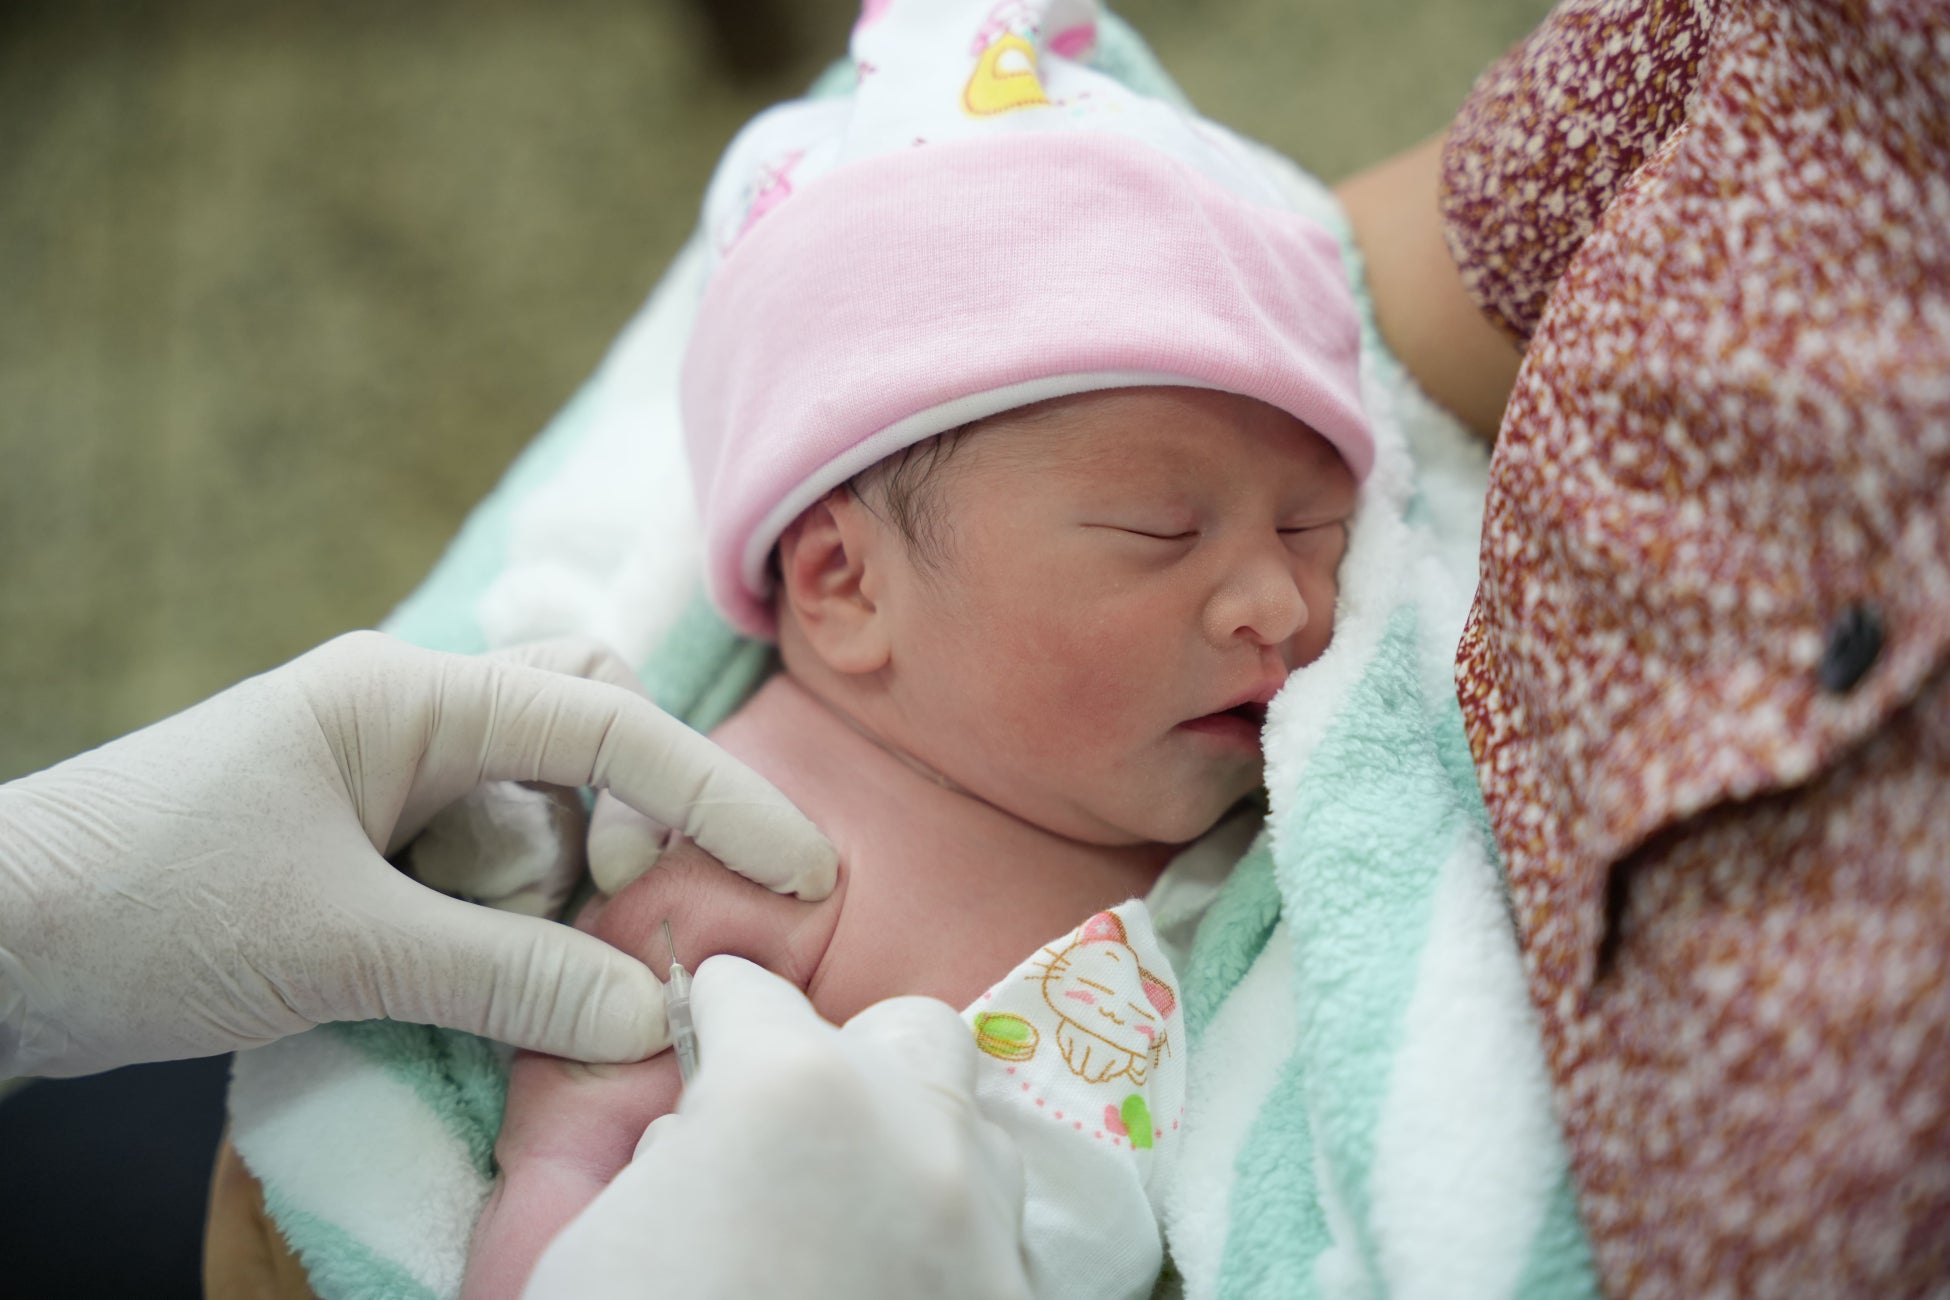 感染症で命を落とす1日4,000人の子どもたちを救うために必要なのは包括的で継続的な支援のサブ画像1_予防接種を受けるラオスの赤ちゃん